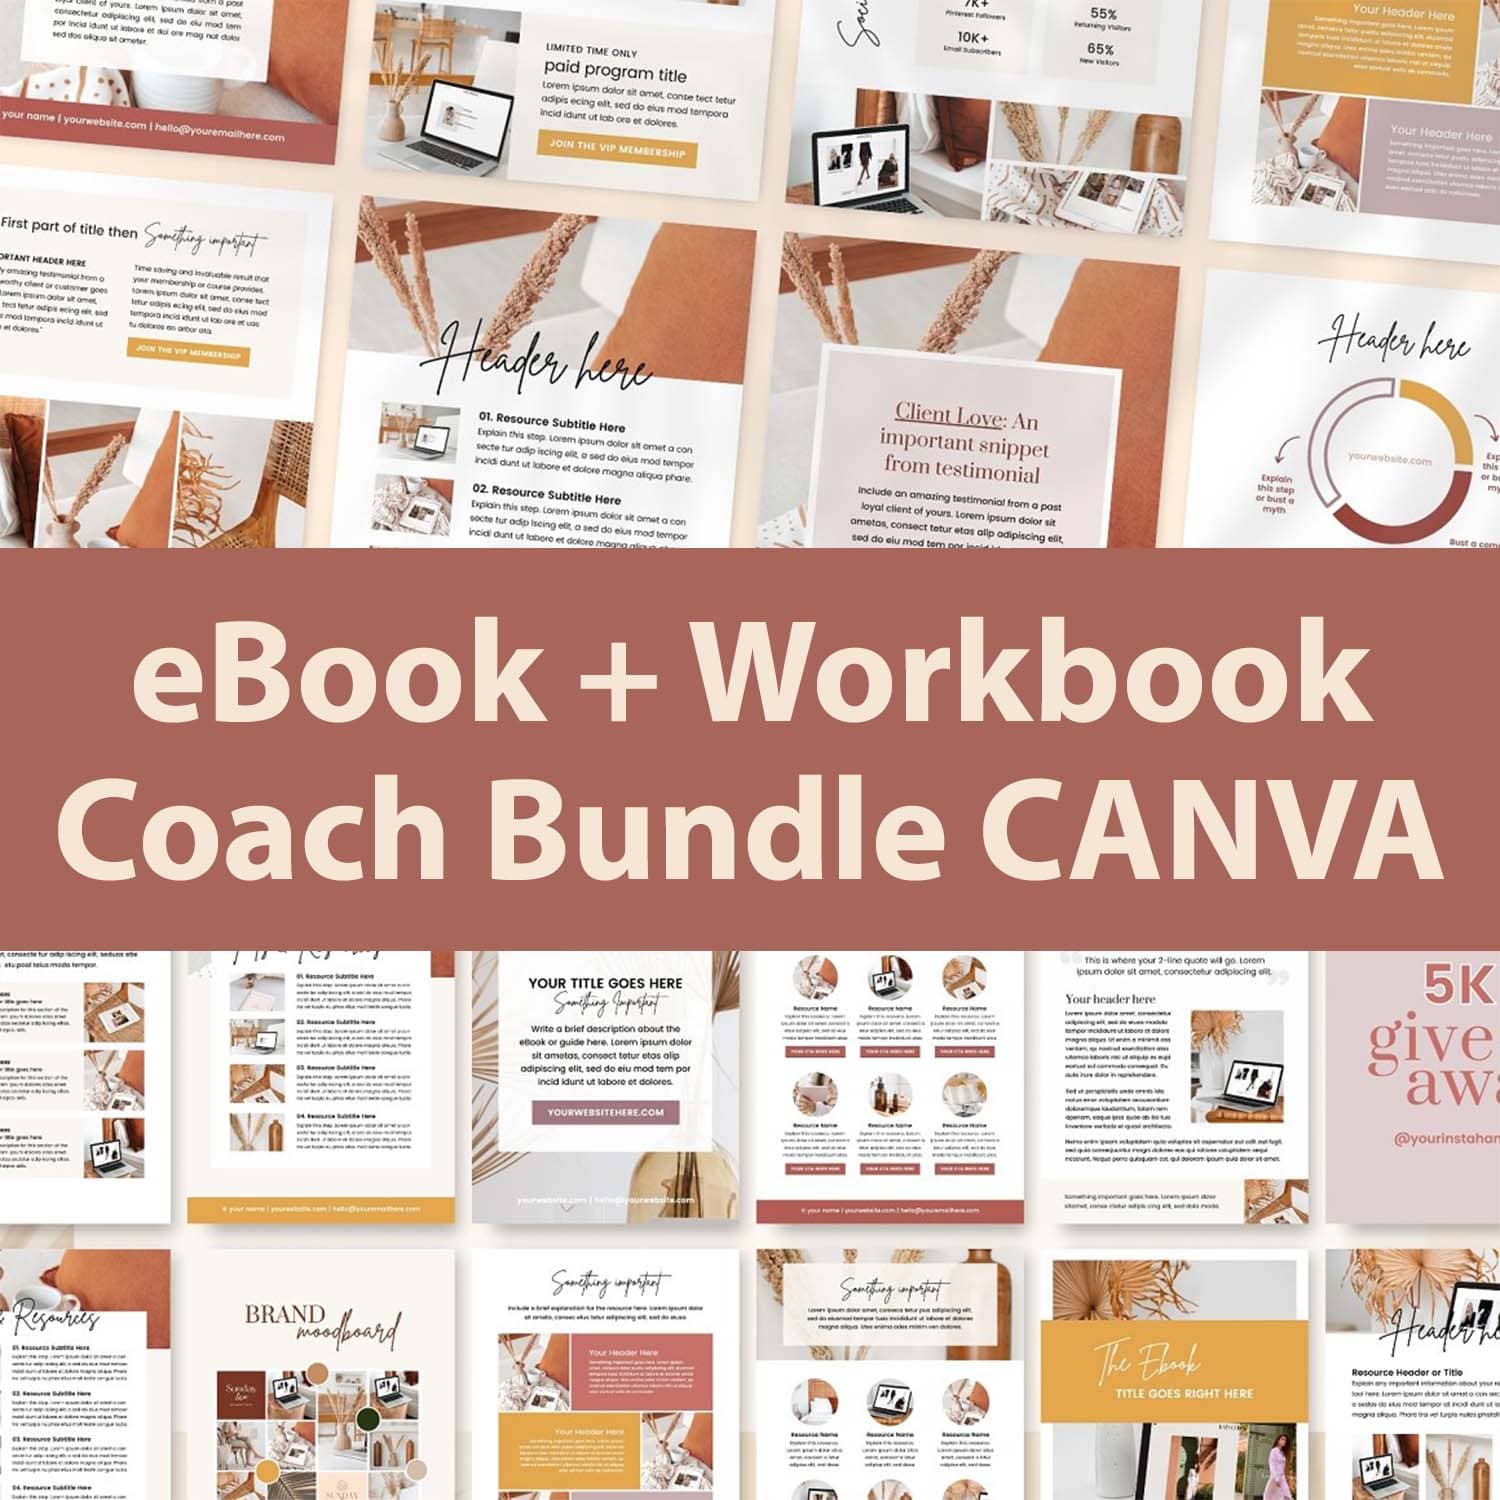 ebook workbook coach bundle canva cover image.